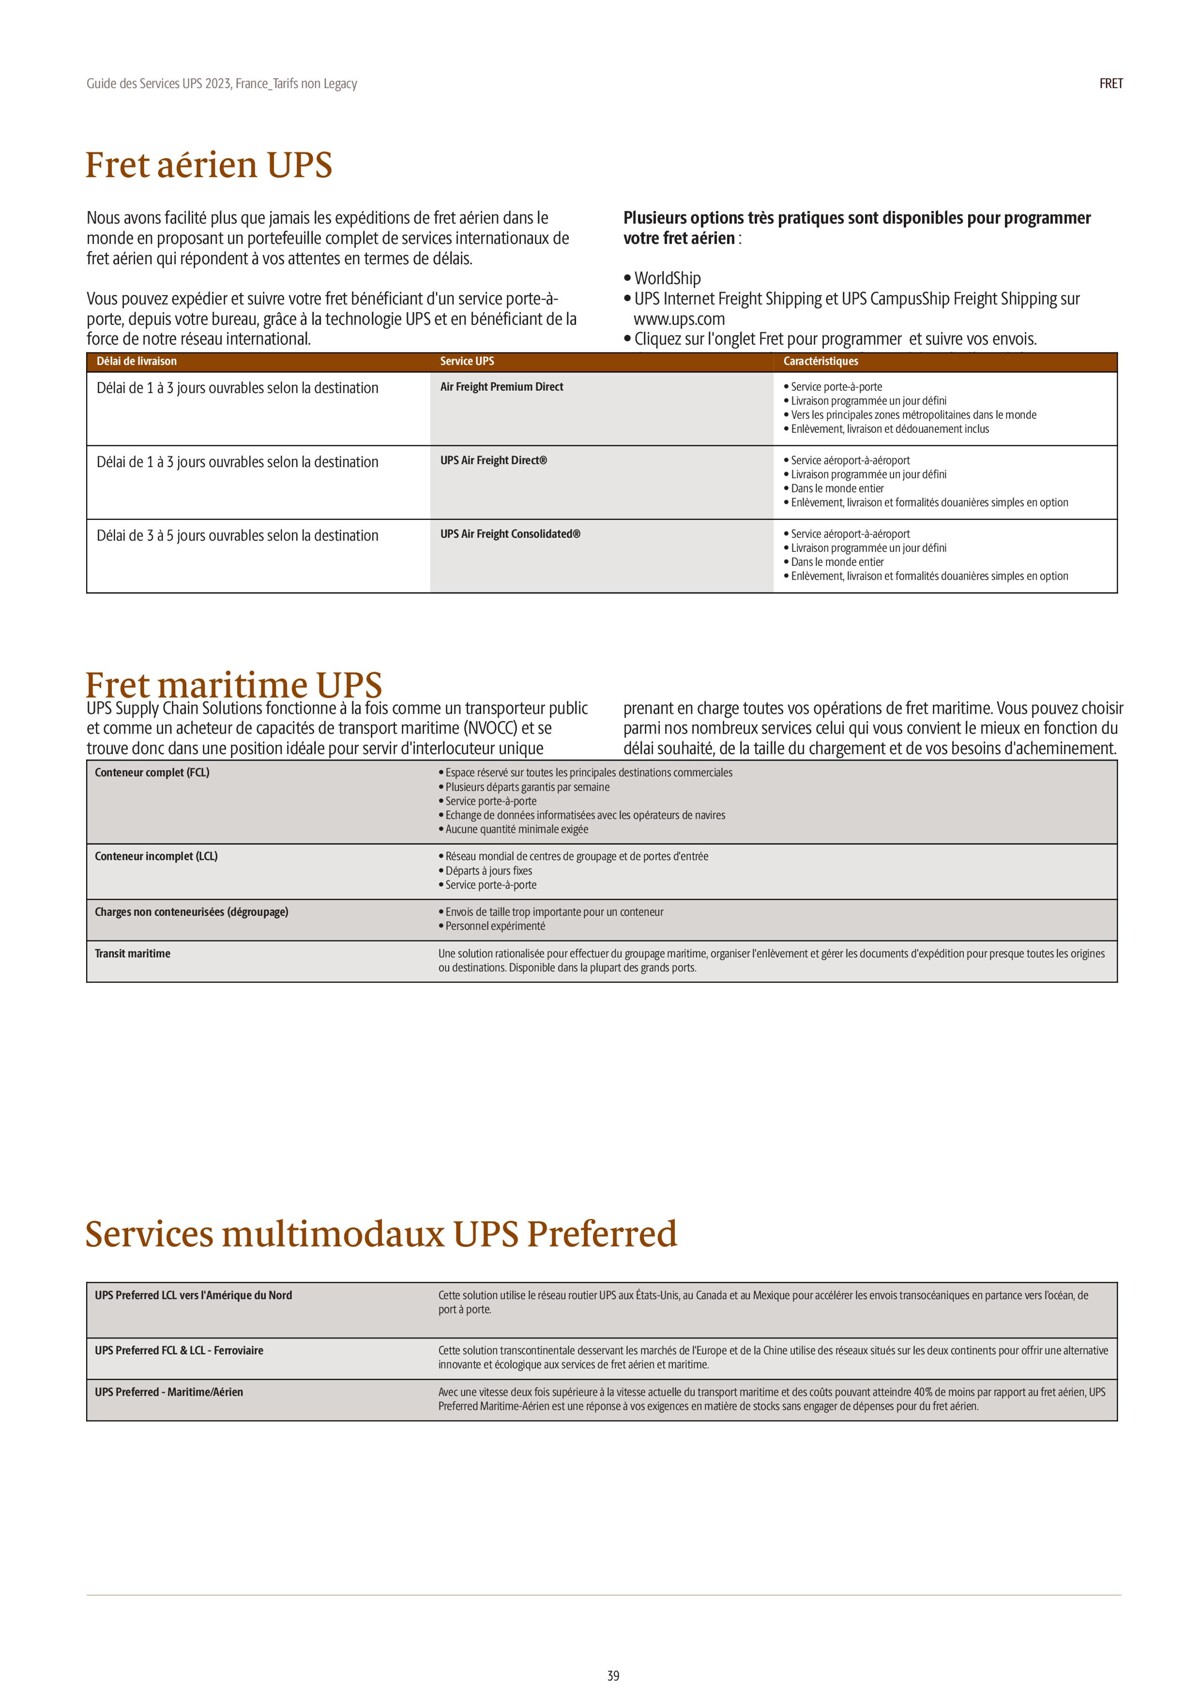 Catalogue Guide des Services 2023, page 00039